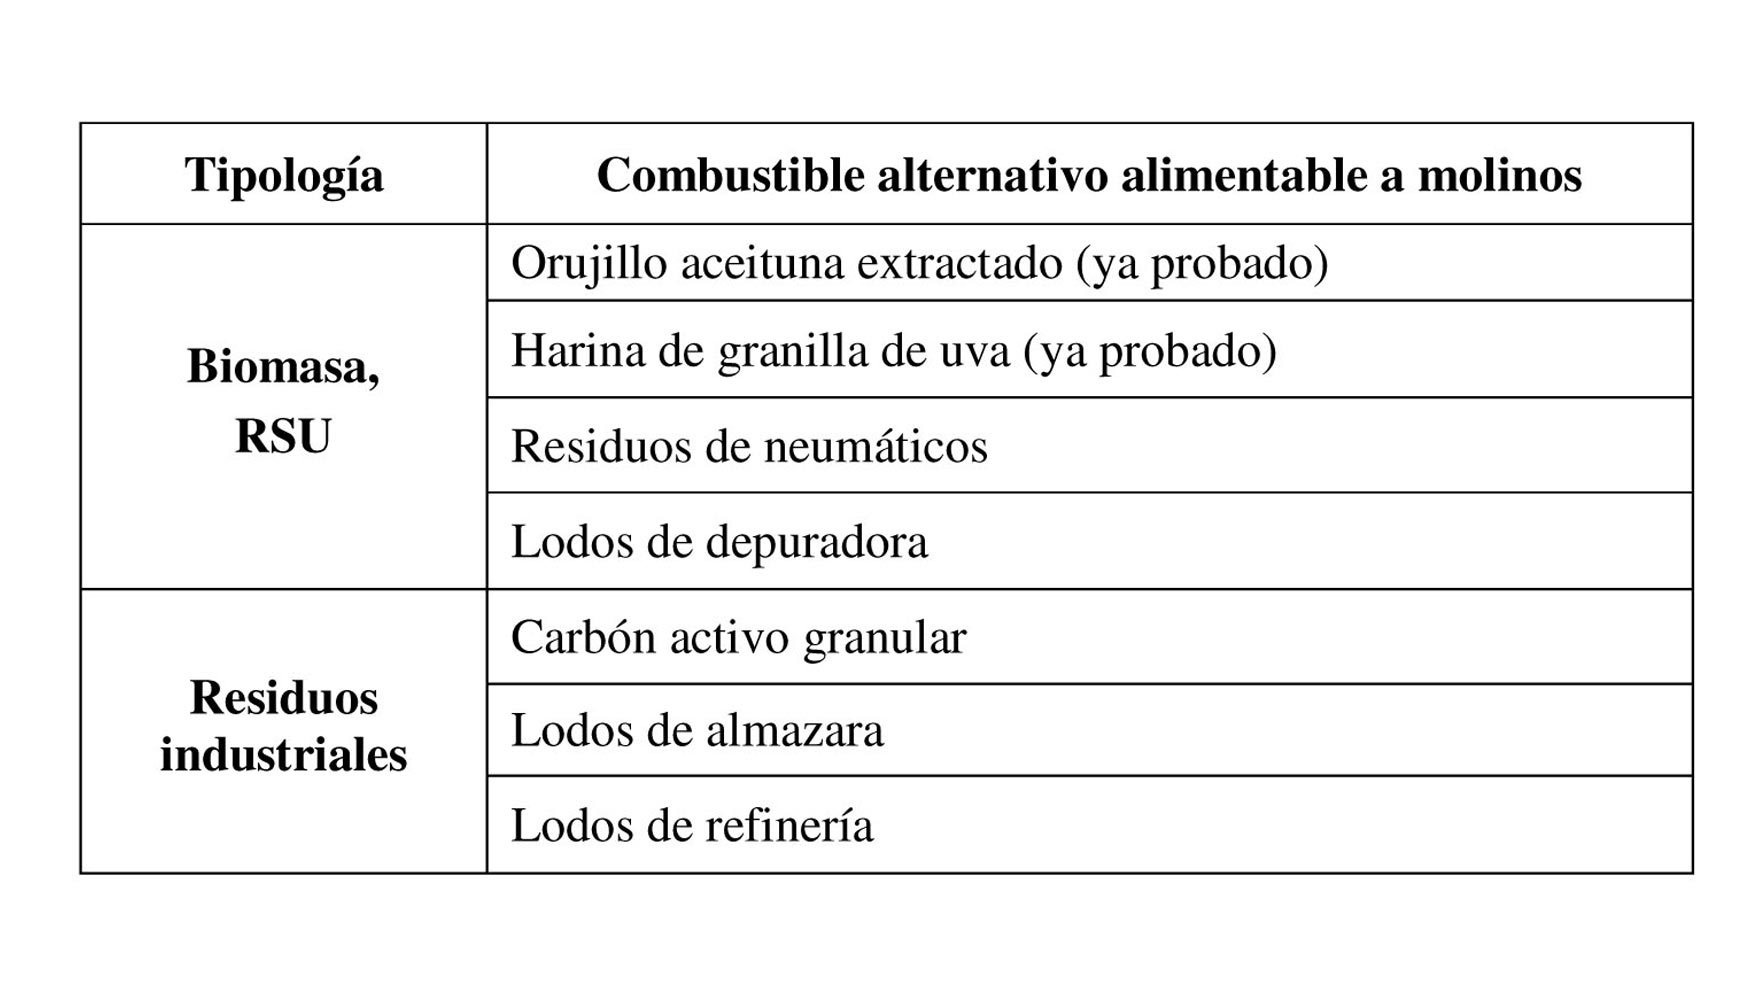 Tabla 2. Combustibles analizados que podran alimentarse sin realizar modificaciones en planta